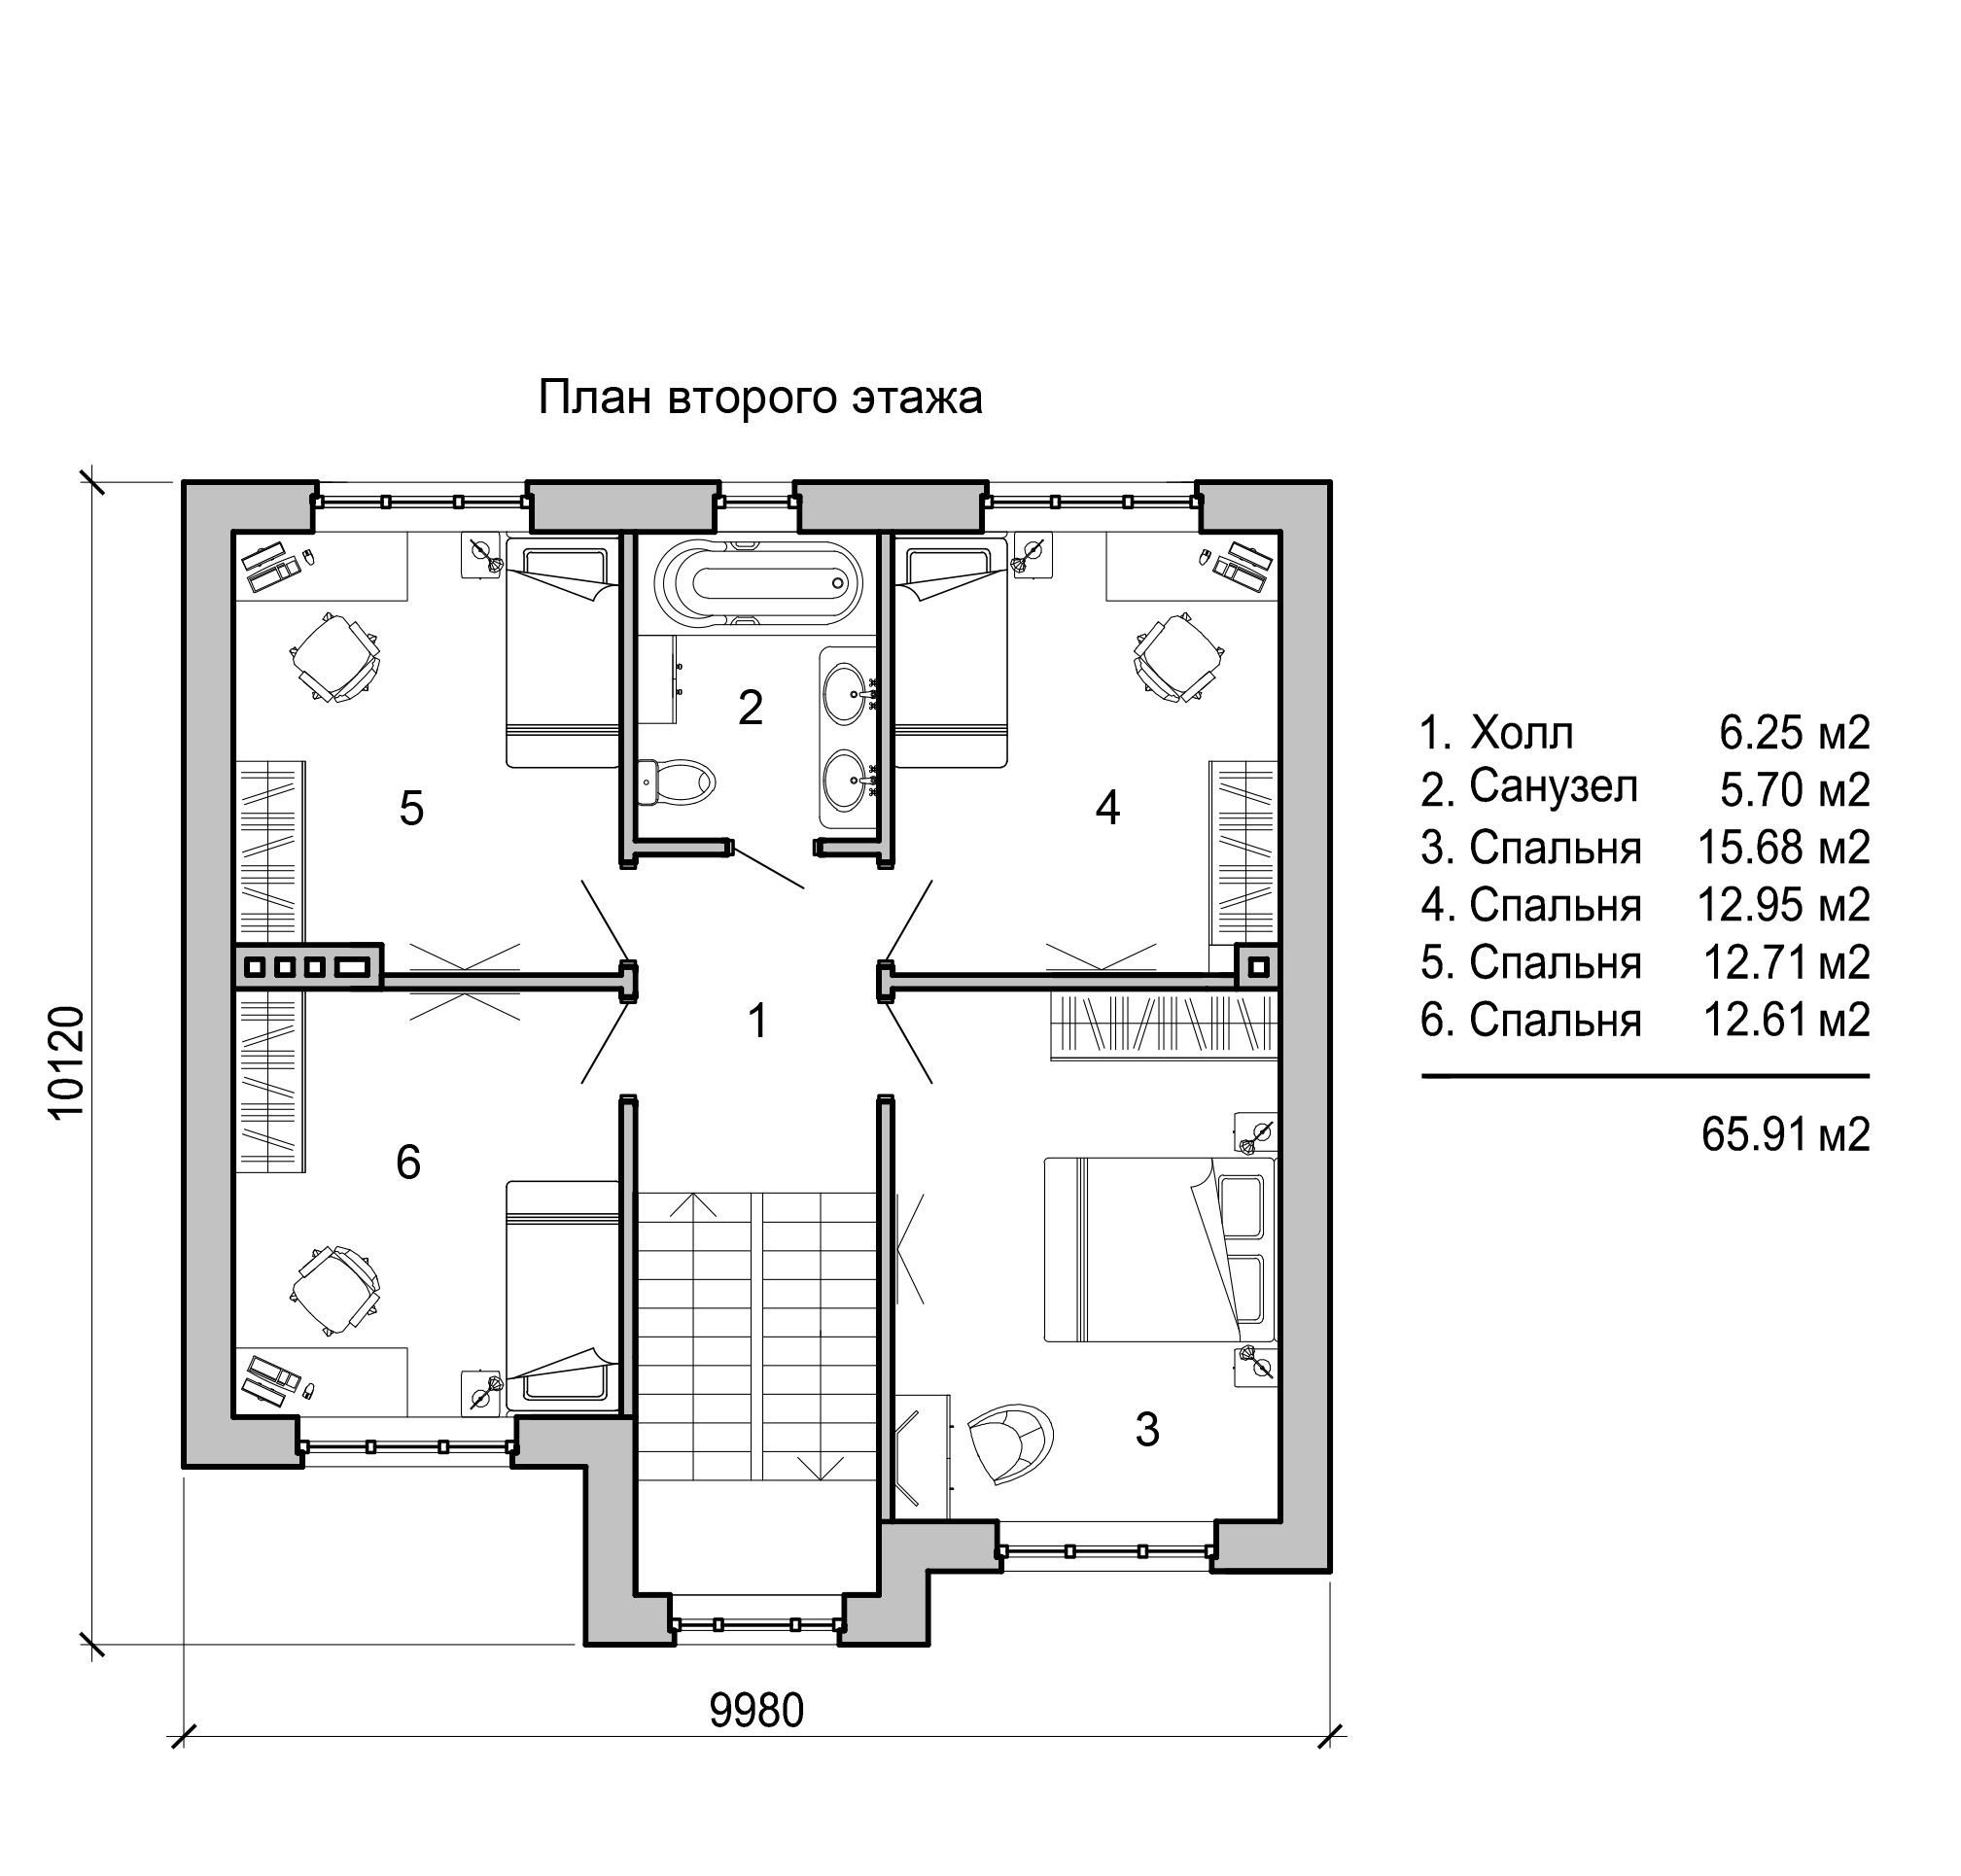 Планировка дома 140 кв.м двухэтажный. План двухэтажного дома с тремя спальнями. План дома с 3 спальнями двухэтажный. План дома на 140 кв двухэтажный.